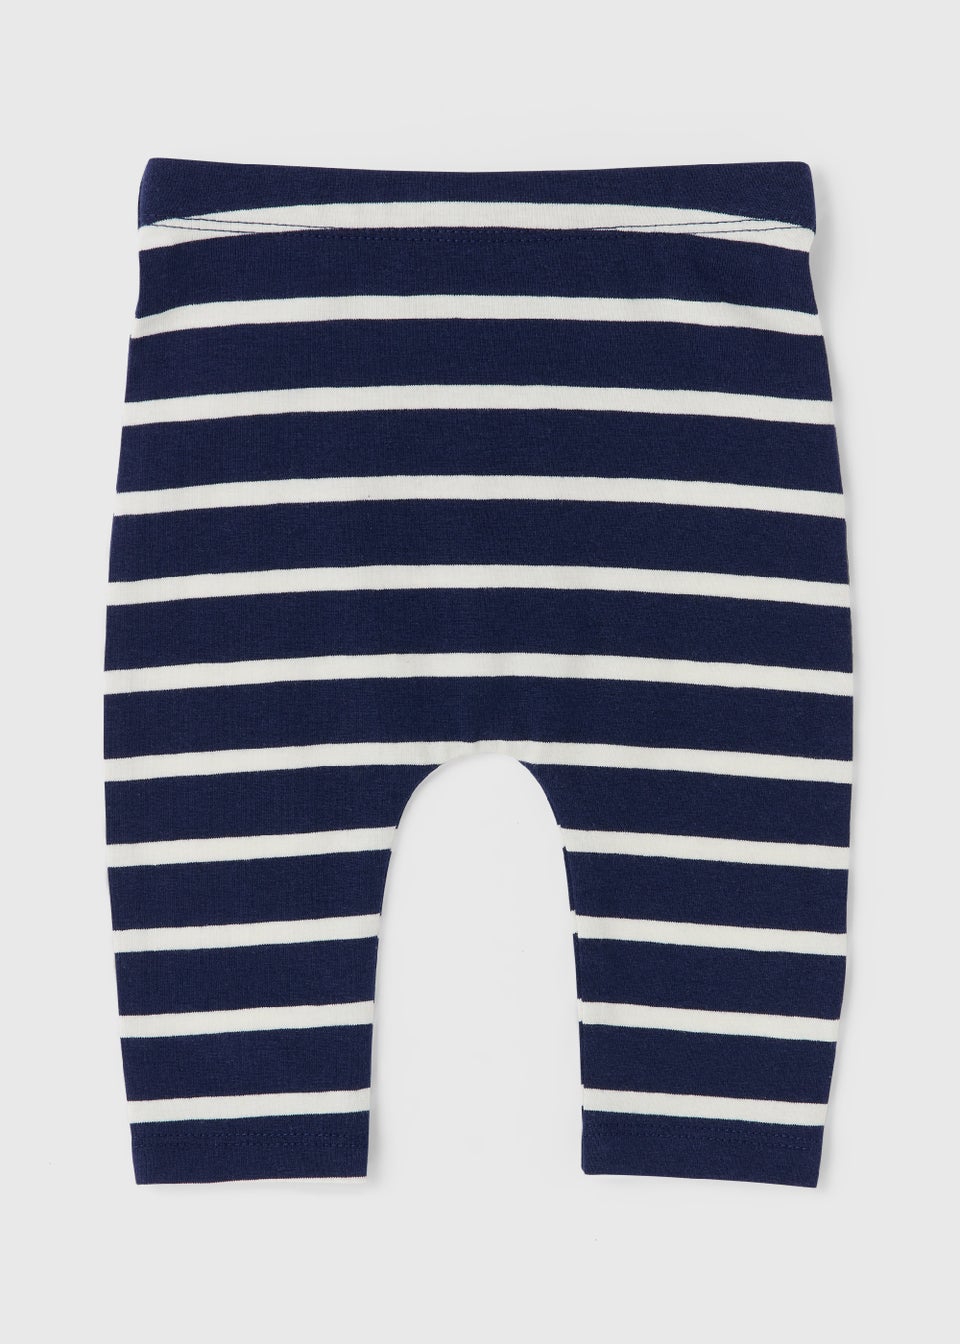 Navy/White Toddler Striped Leggings